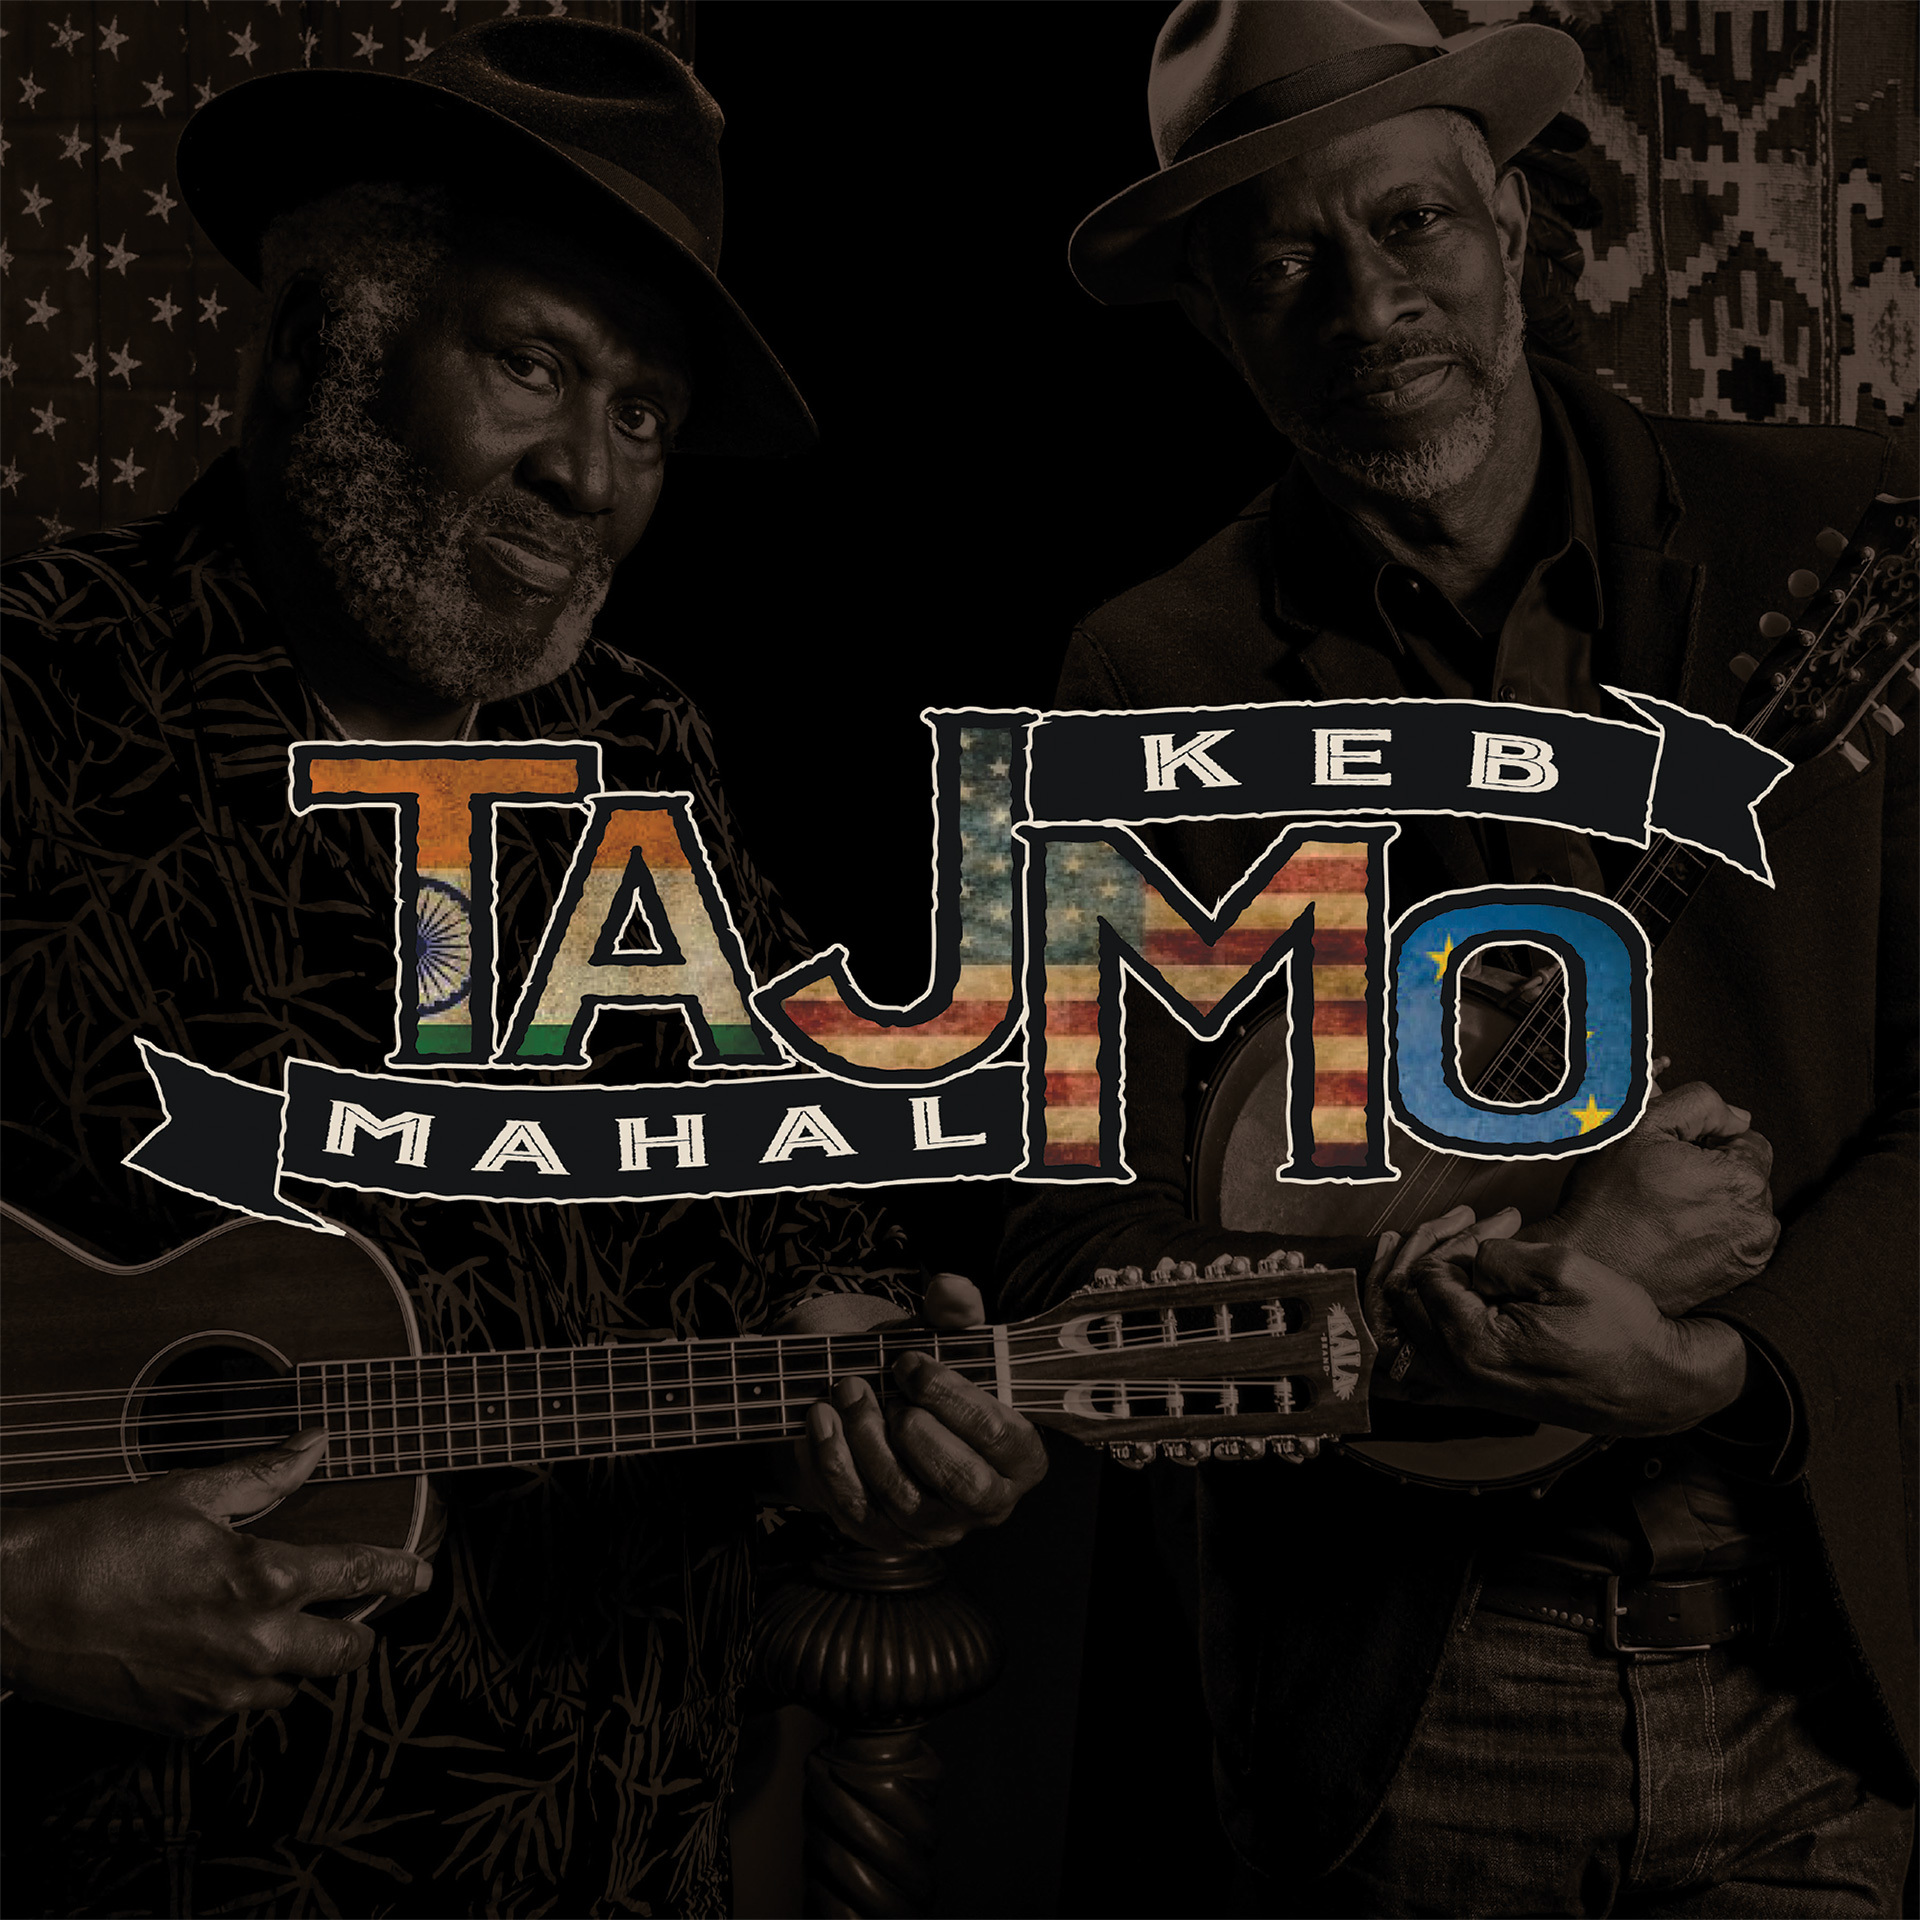 TajMo|Keb' Mo'/Taj Mahal